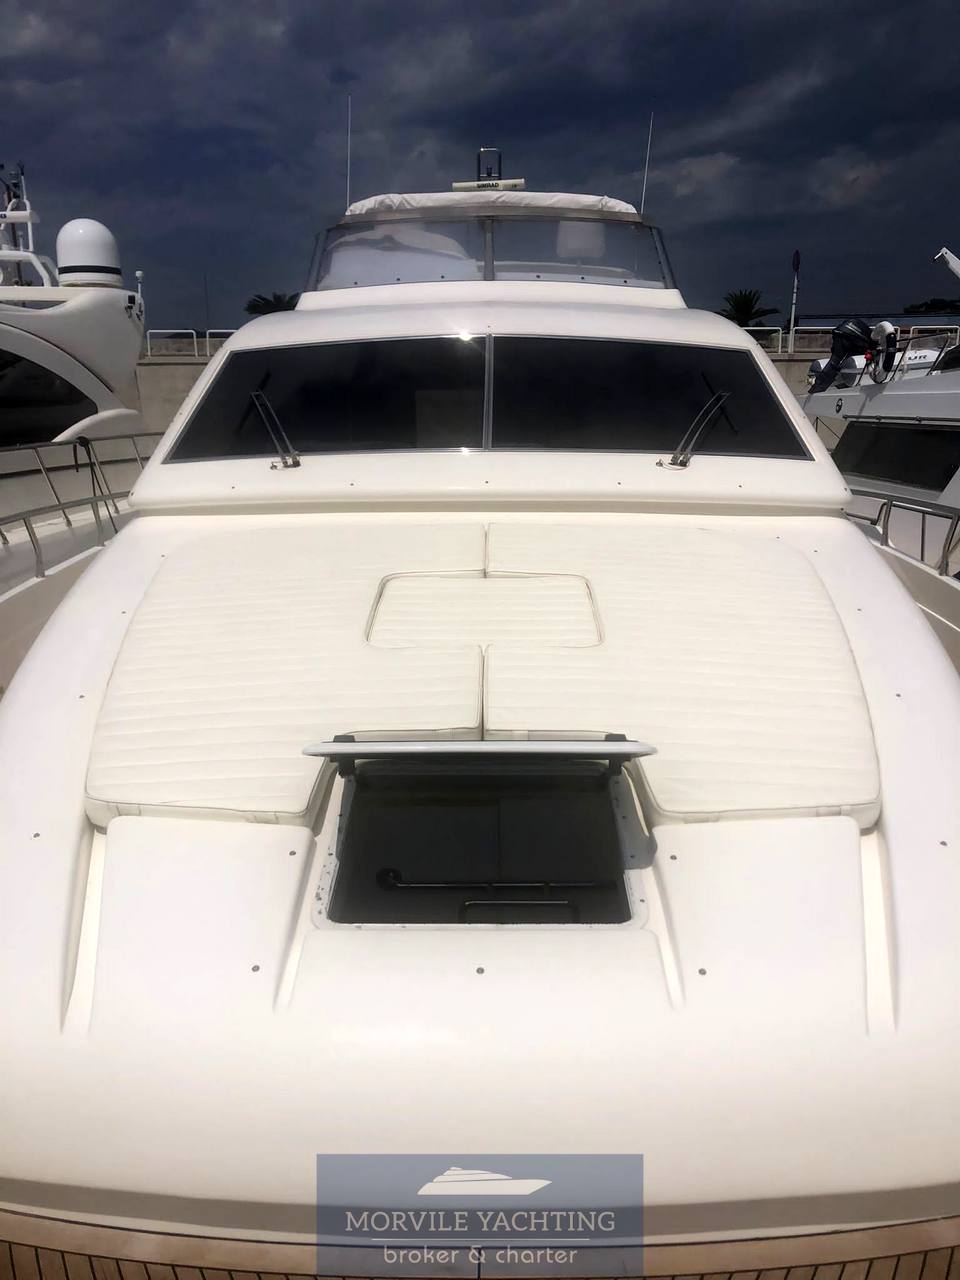 POSILLIPO RIZZARDI Technema 65 Motor boat charter